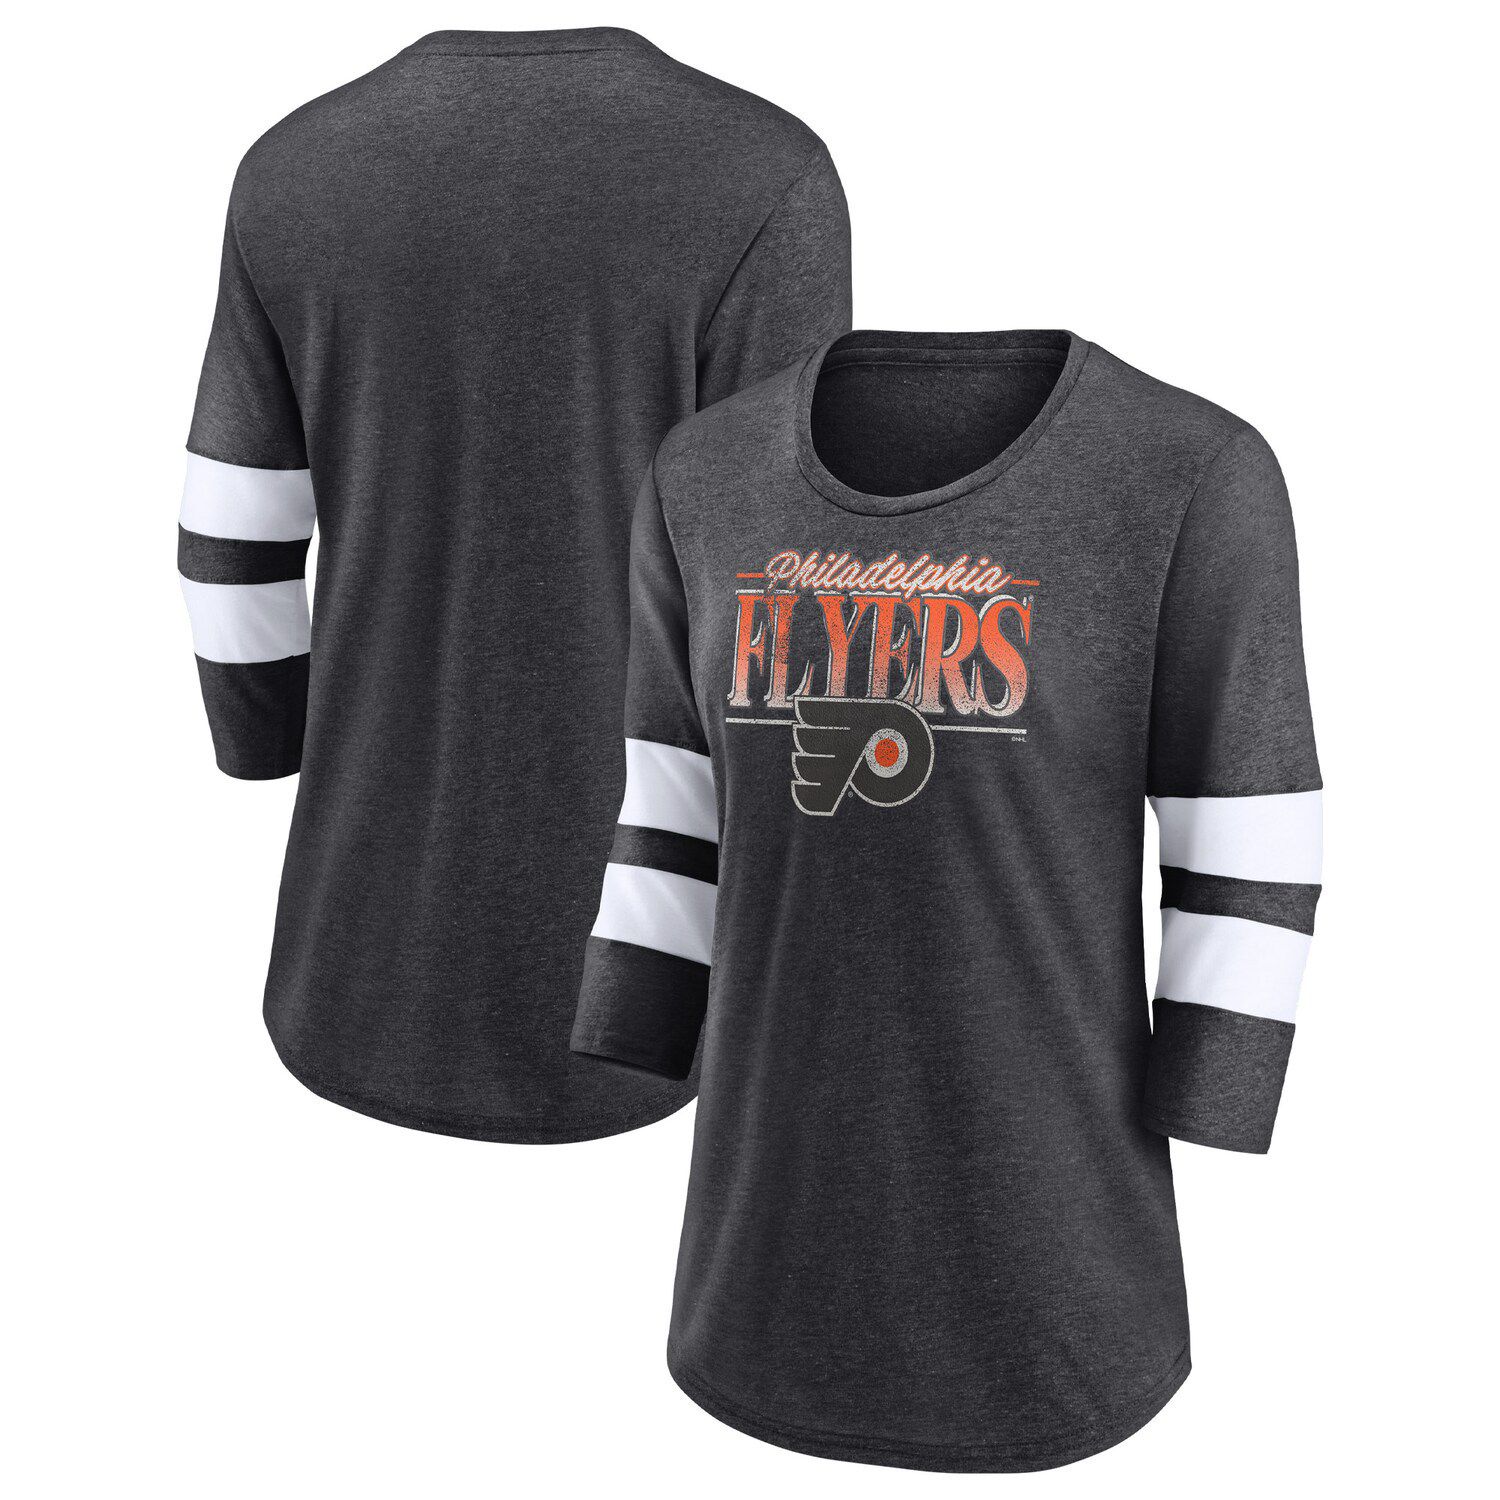 Men's Starter Black Philadelphia Flyers Offense Long Sleeve Hoodie T-Shirt